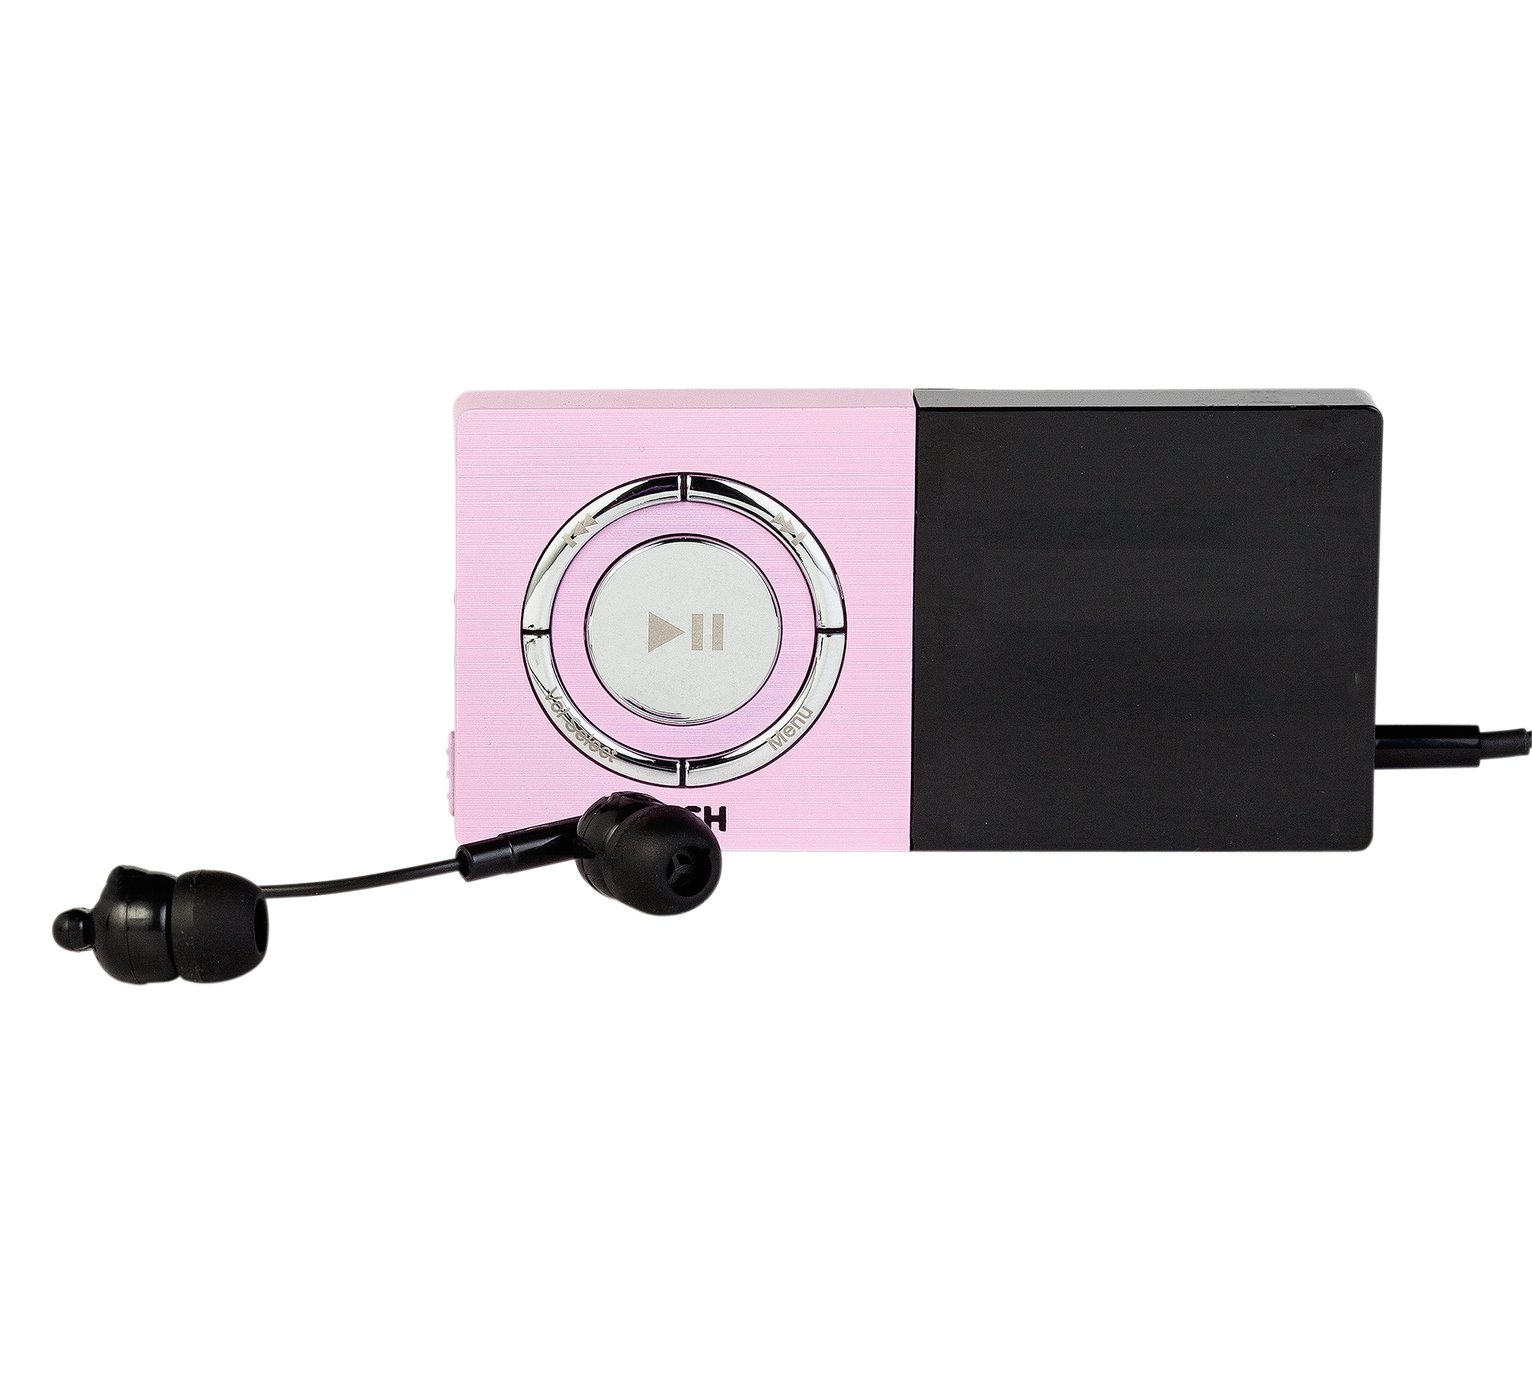 Bush 8GB MP3 Player - Pink Review thumbnail